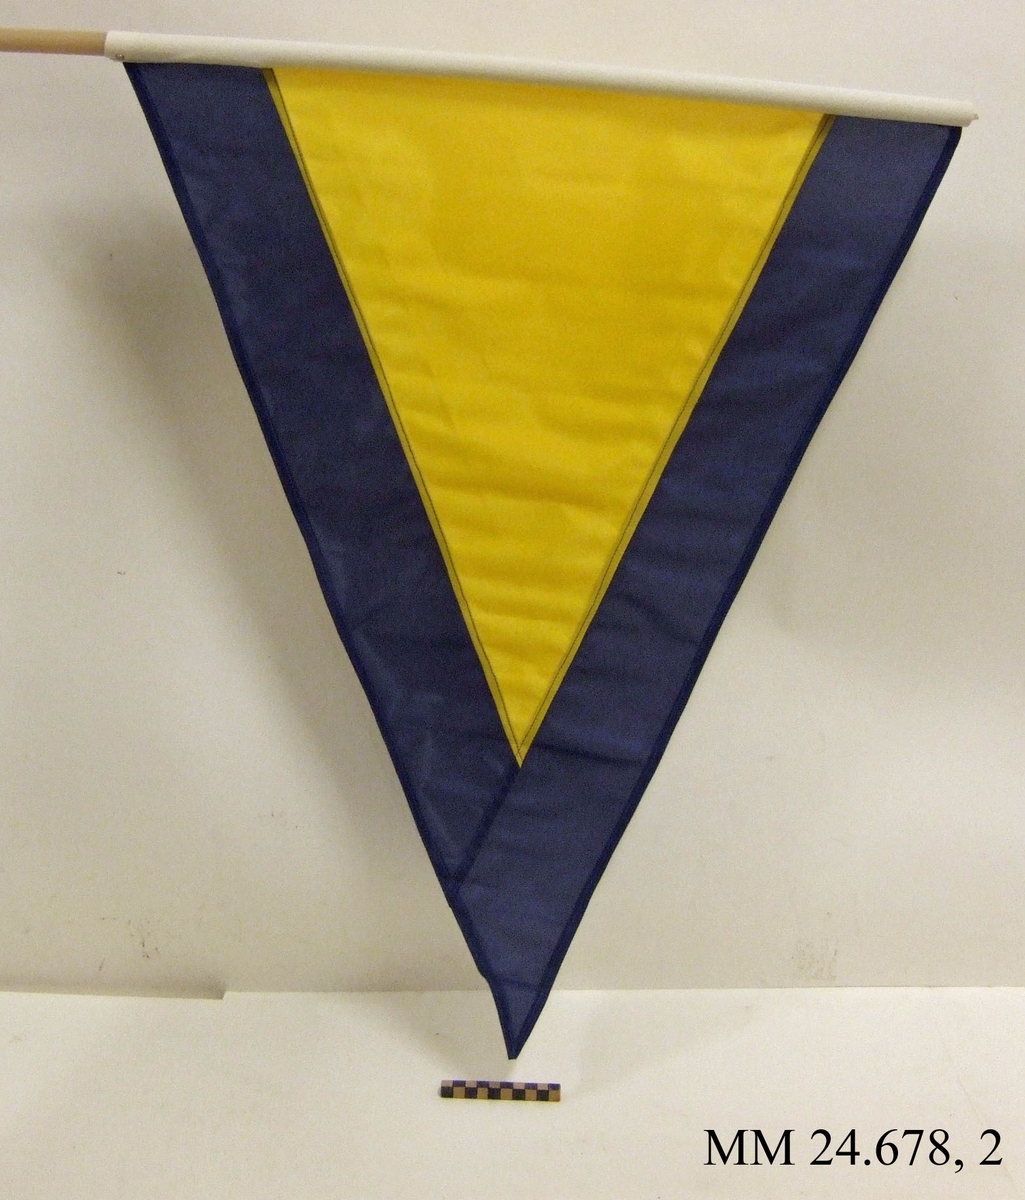 Fartstandert av nylon på rund stång av plast. Även standerten Alfa. Trekantig form, gul med mörkblå kant ca 120mm. Vitt lik trätt på plaststav och skruvat fast. Flaggan ligger i påse tillsammans med tre andra flaggor, sk. fartflaggställ M 8320-034010.